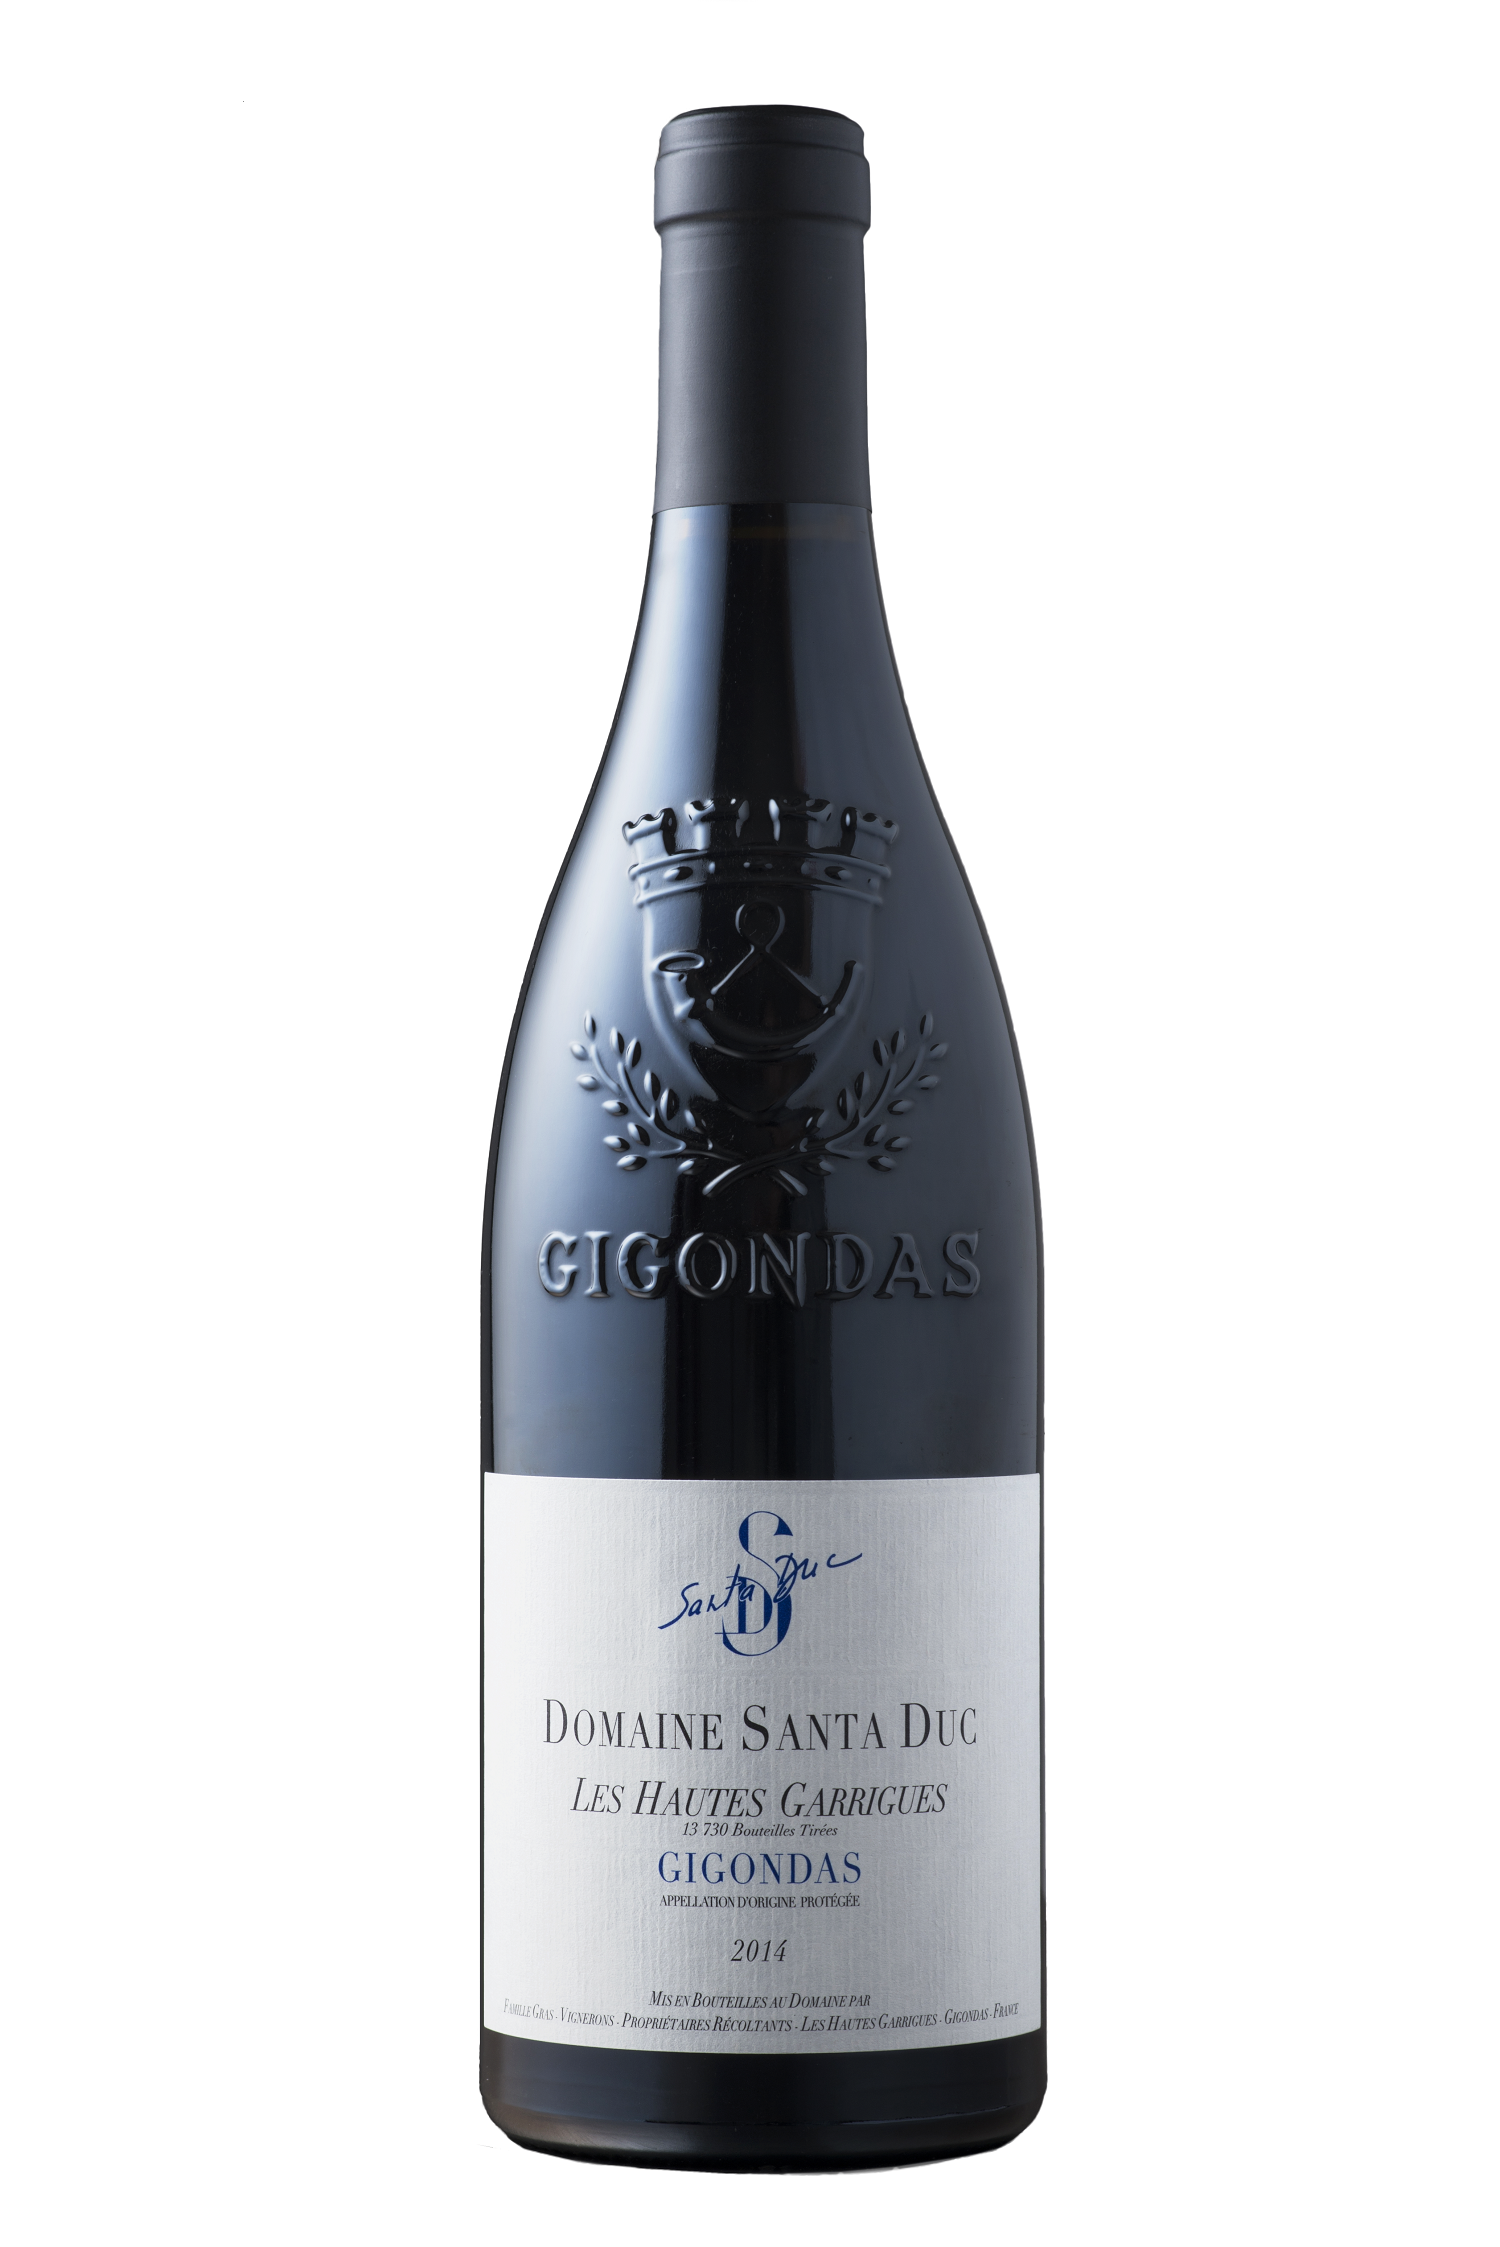 Gigondas Prestige des Hautes Garrigues 75cl 2014 Domaine Santa Duc